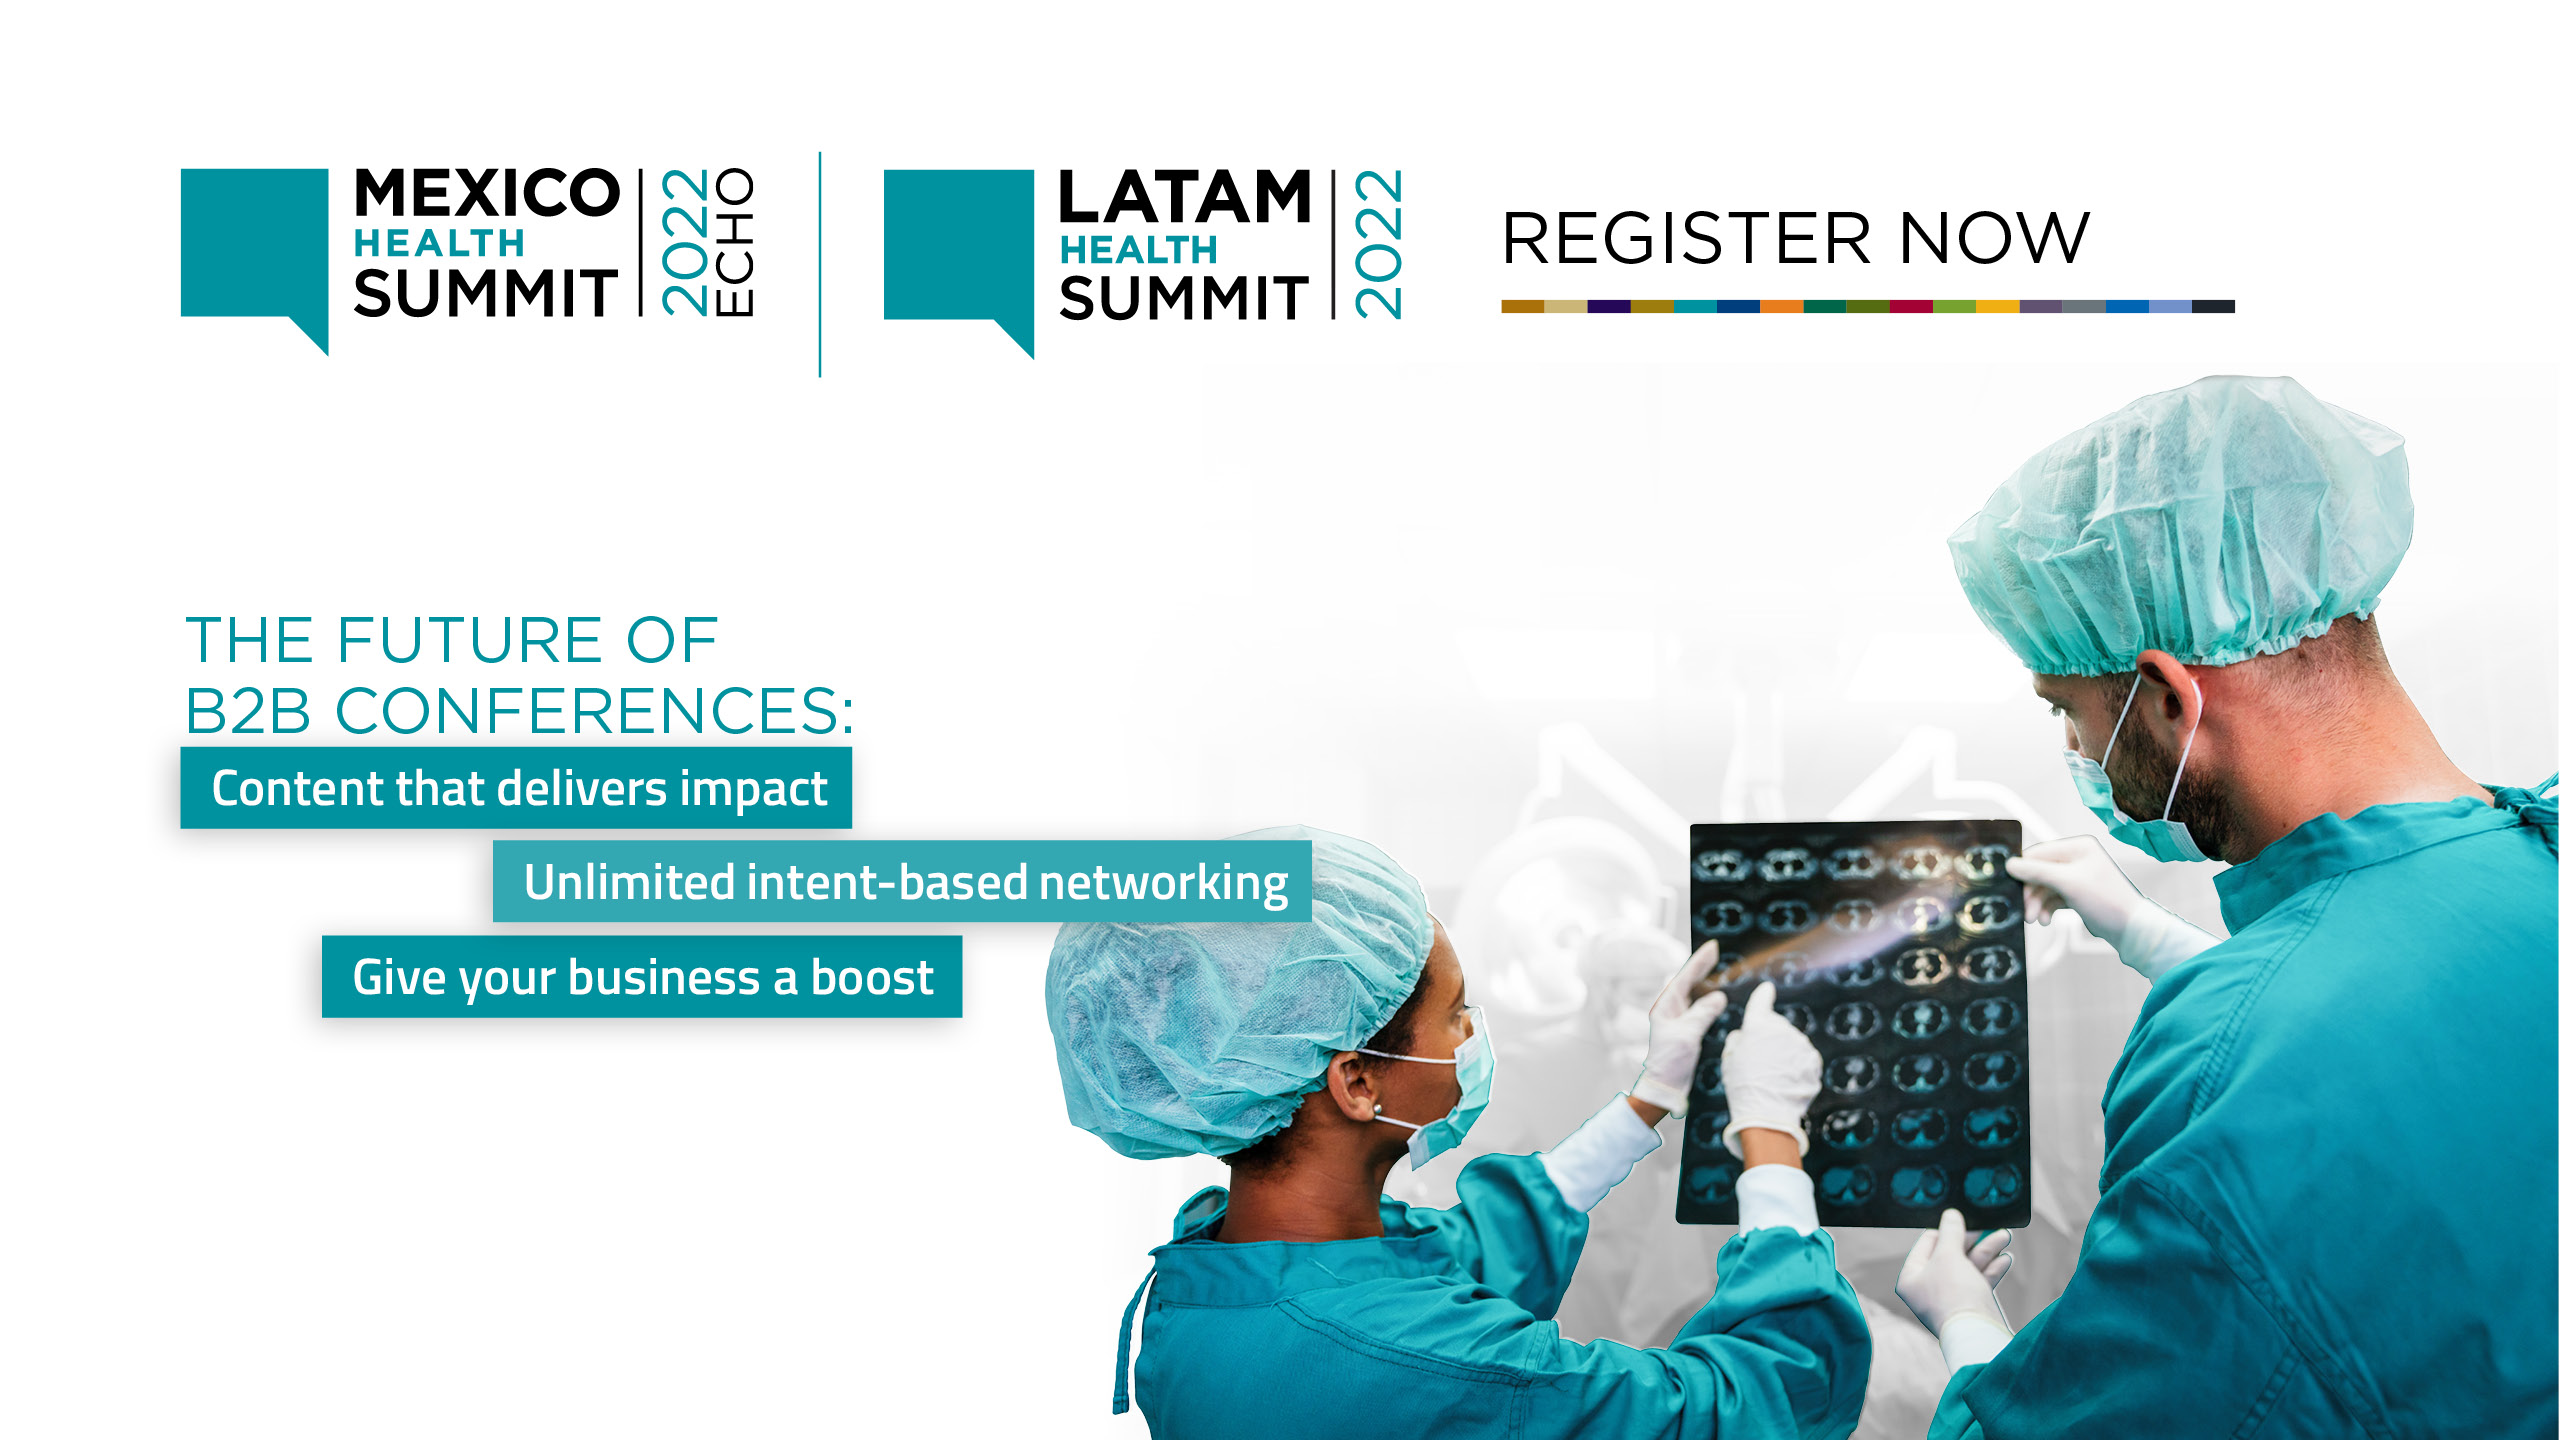 Mexico Health Summit 2022 ECHO | LATAM Health Summit 2022